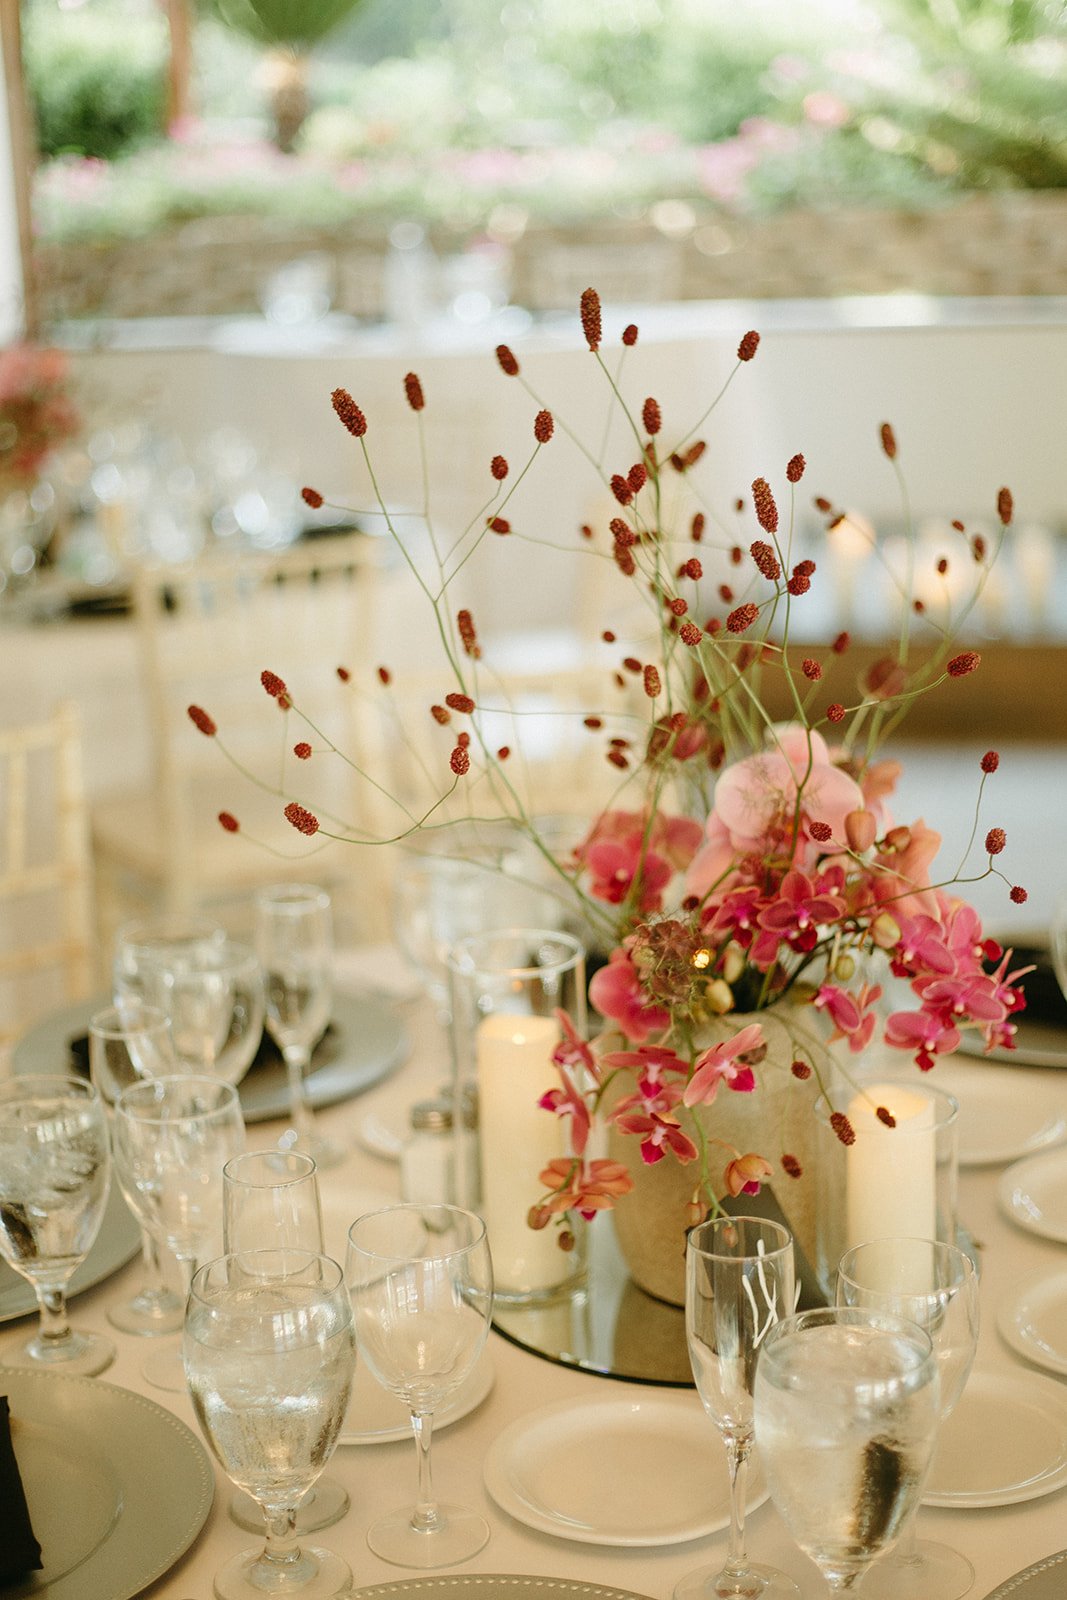 Elegant and Timeless wedding details and floral arrangements